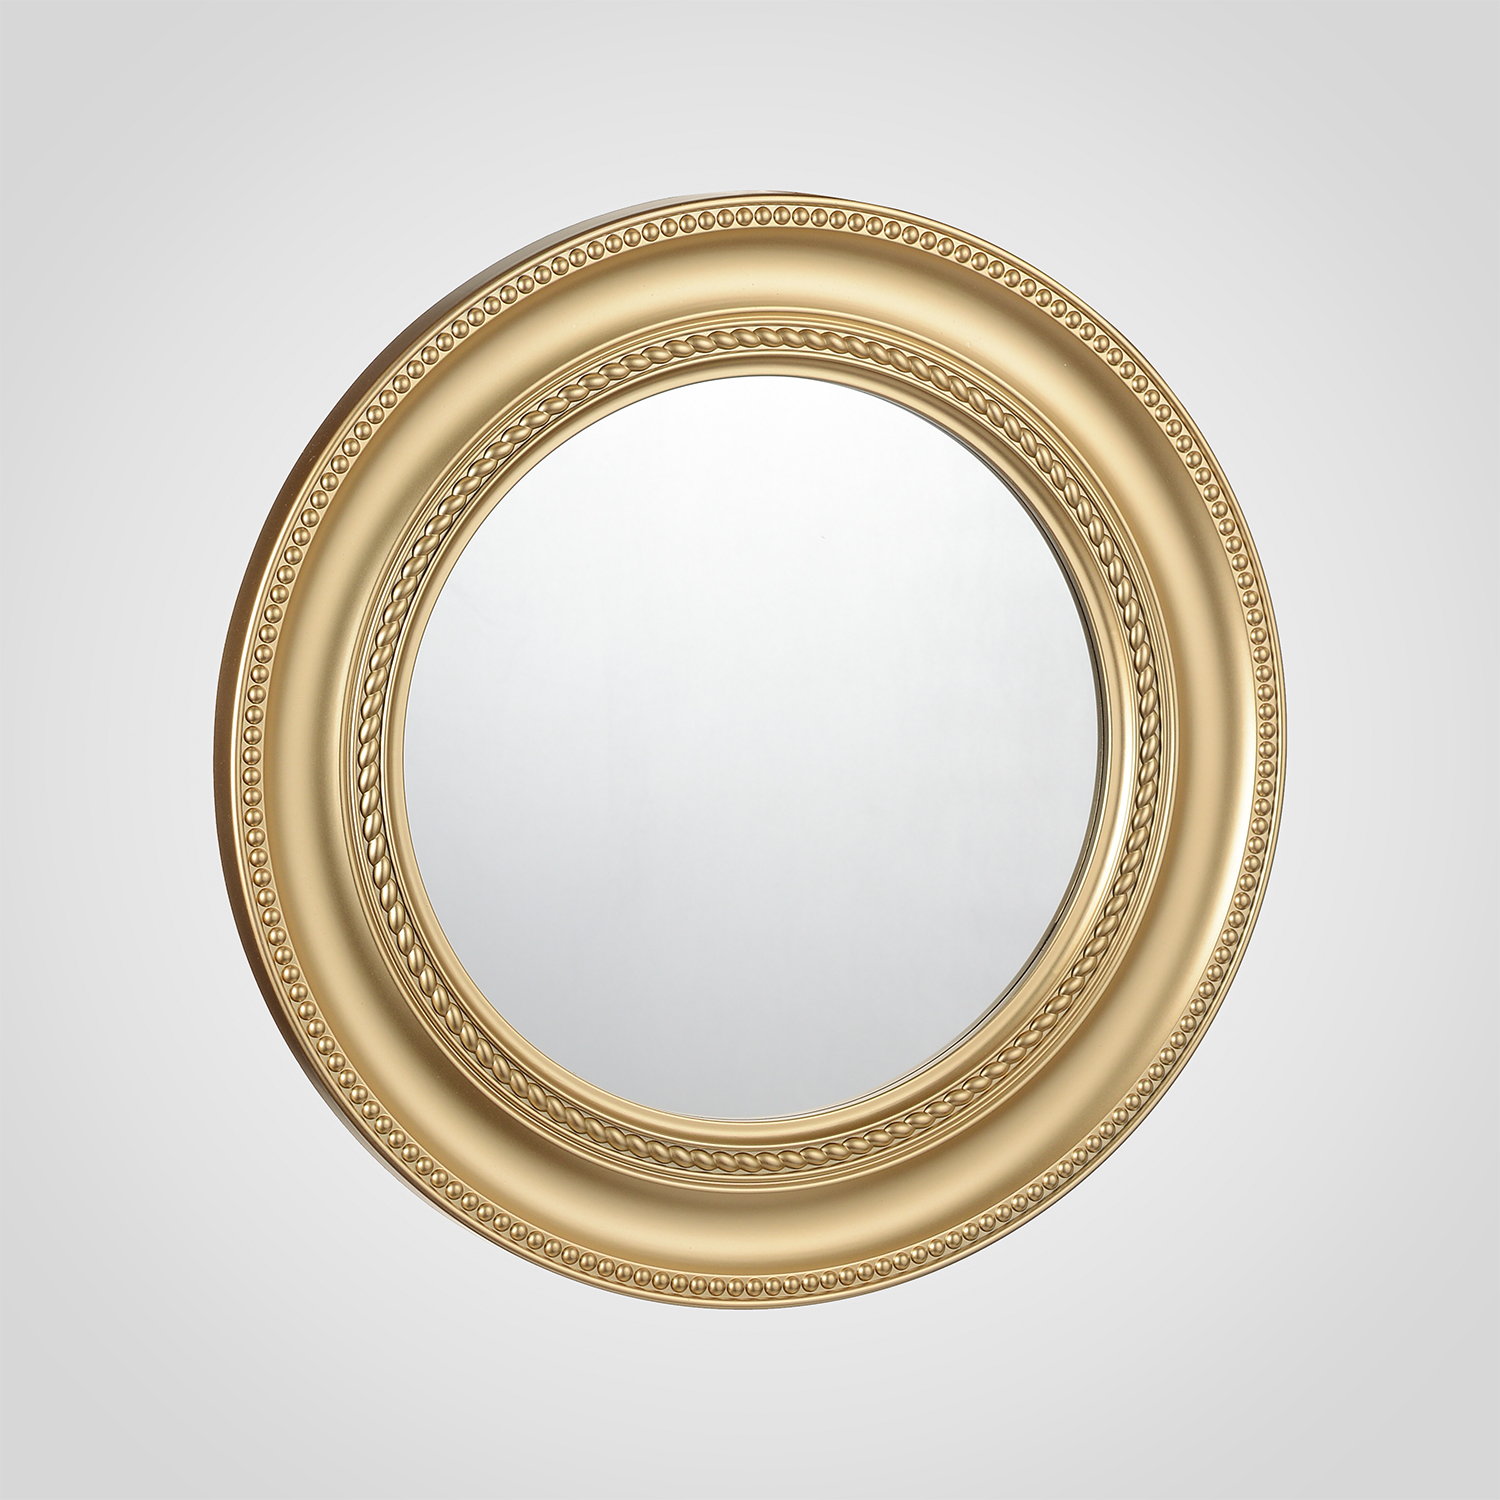 1х зеркало t me. Зеркало Vallessi овальное 110x60см, золото. Зеркало золотое круглое "Вернер". Зеркало круглое migliore 30584 золото. Круглое зеркало в золотой оправе.